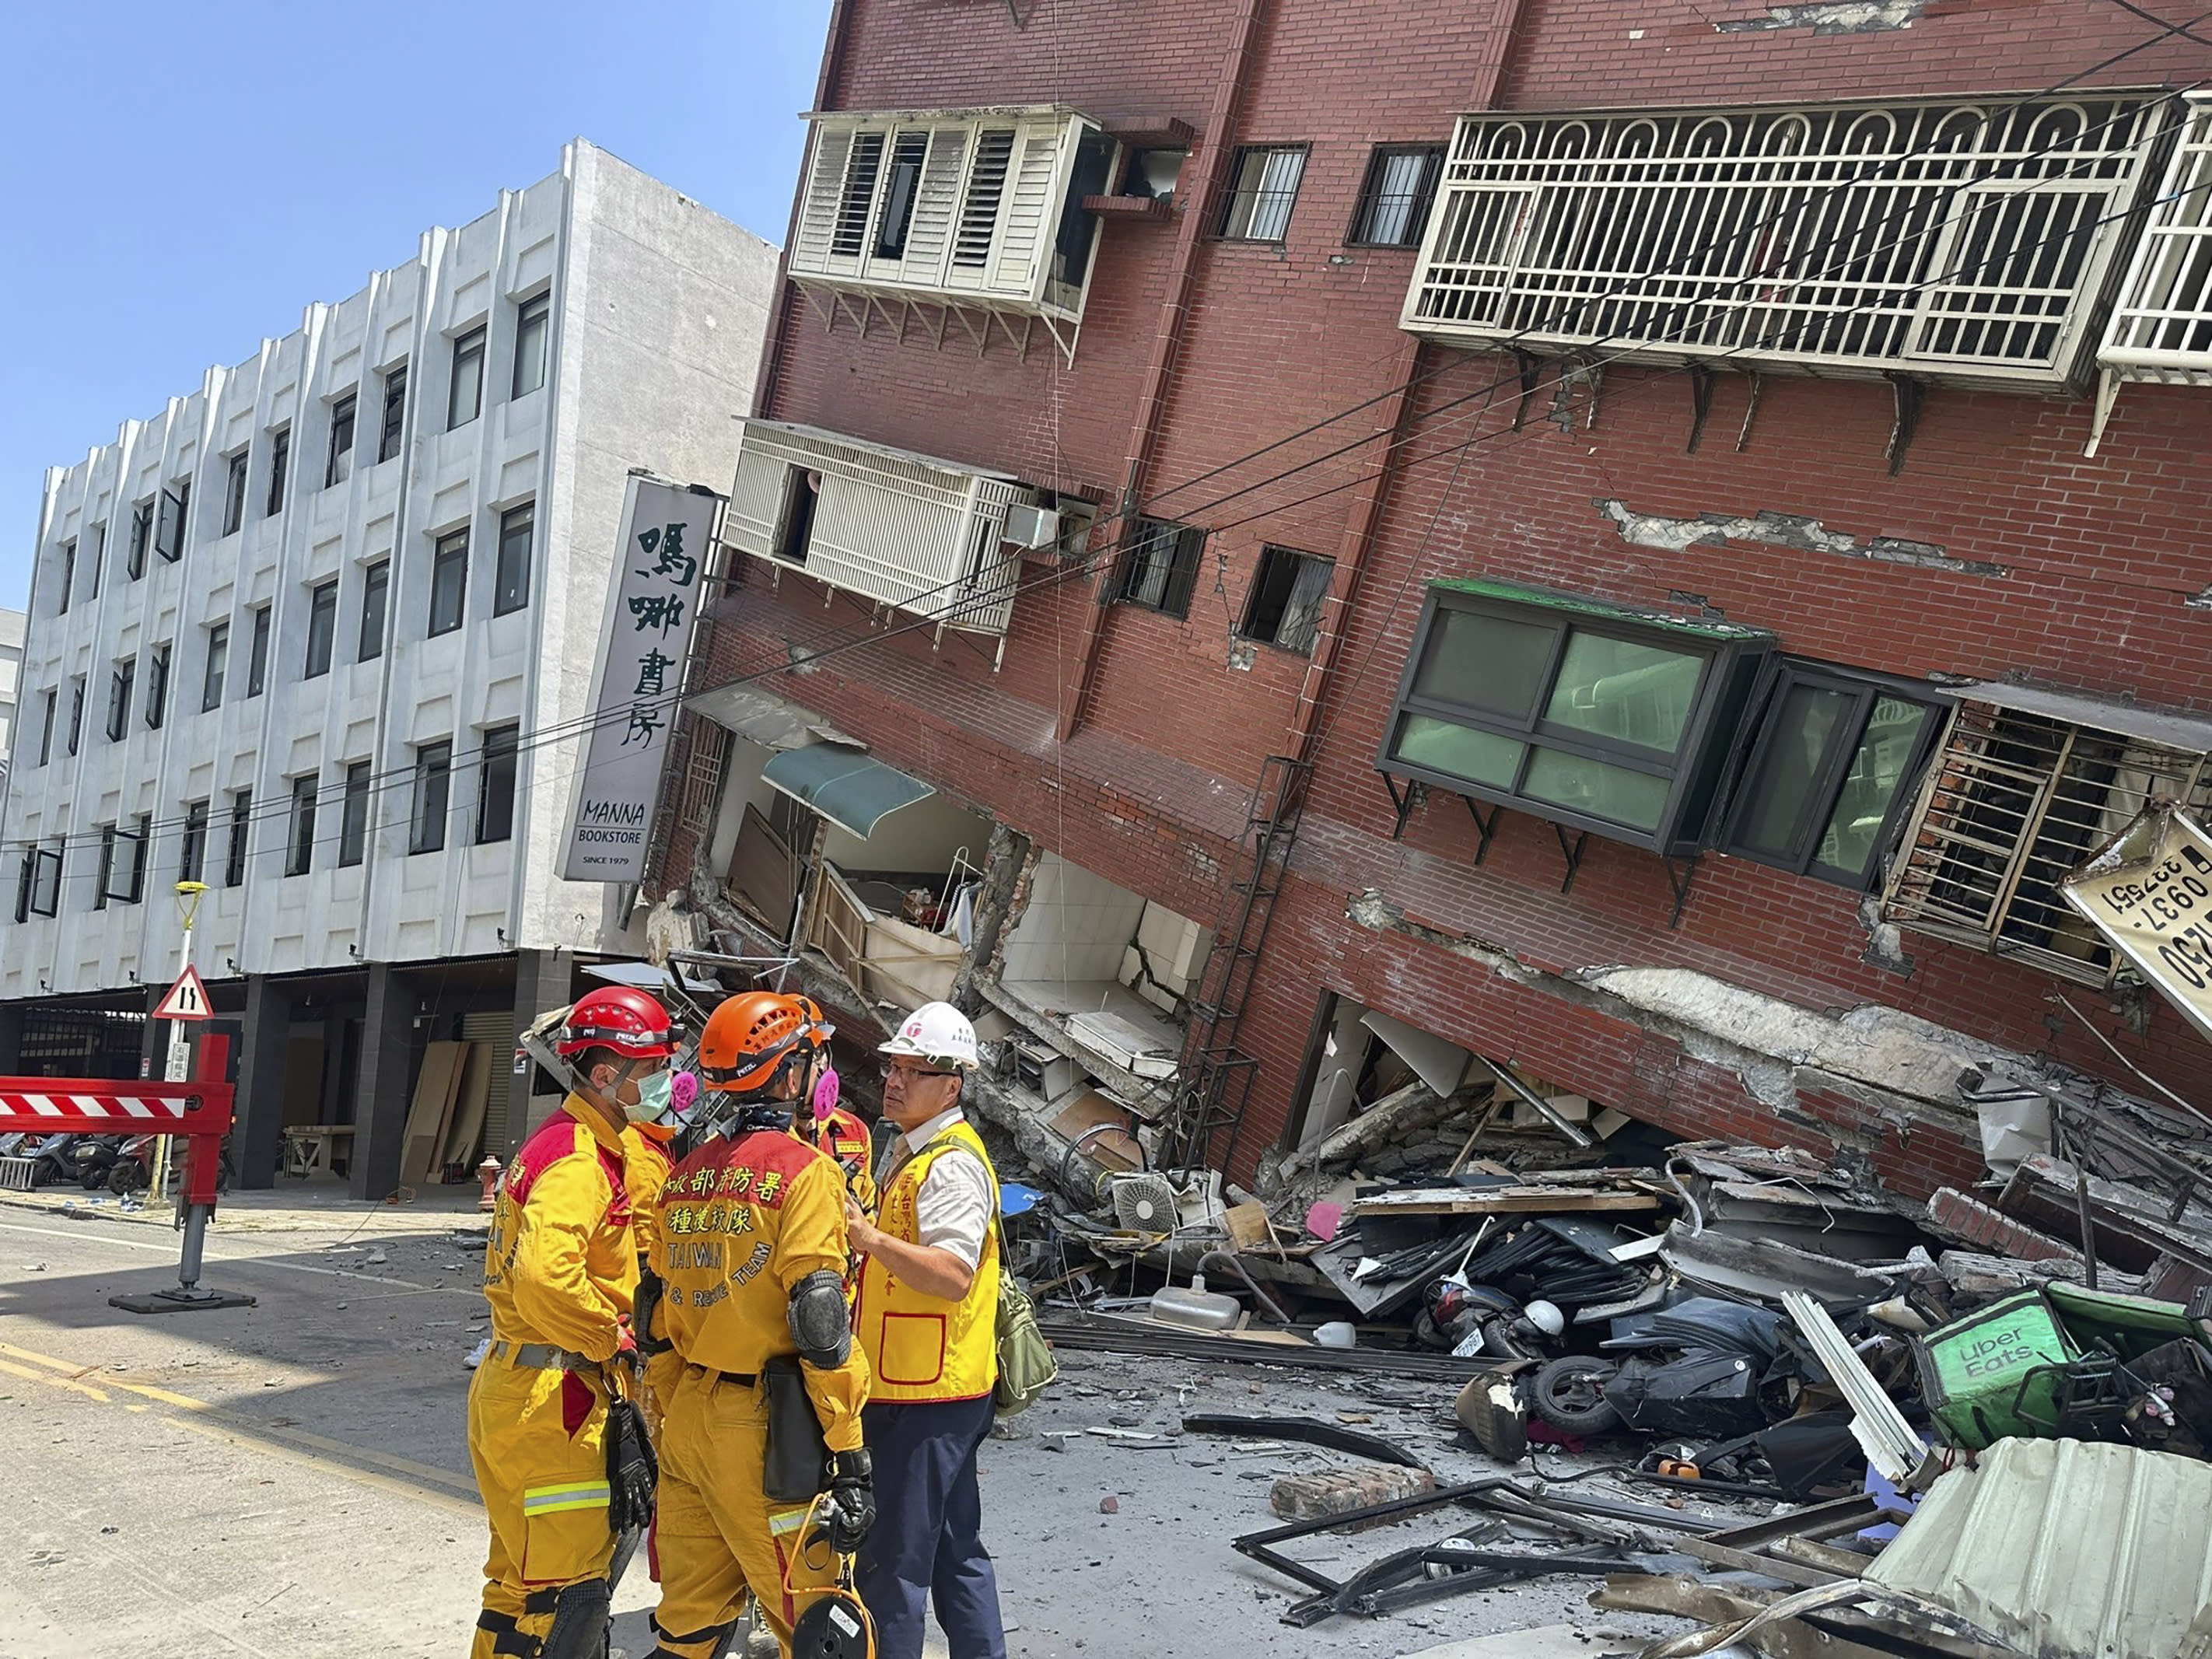 Membros de uma equipe de busca e resgate se reúnem em frente a um prédio na cidade de Hualien.